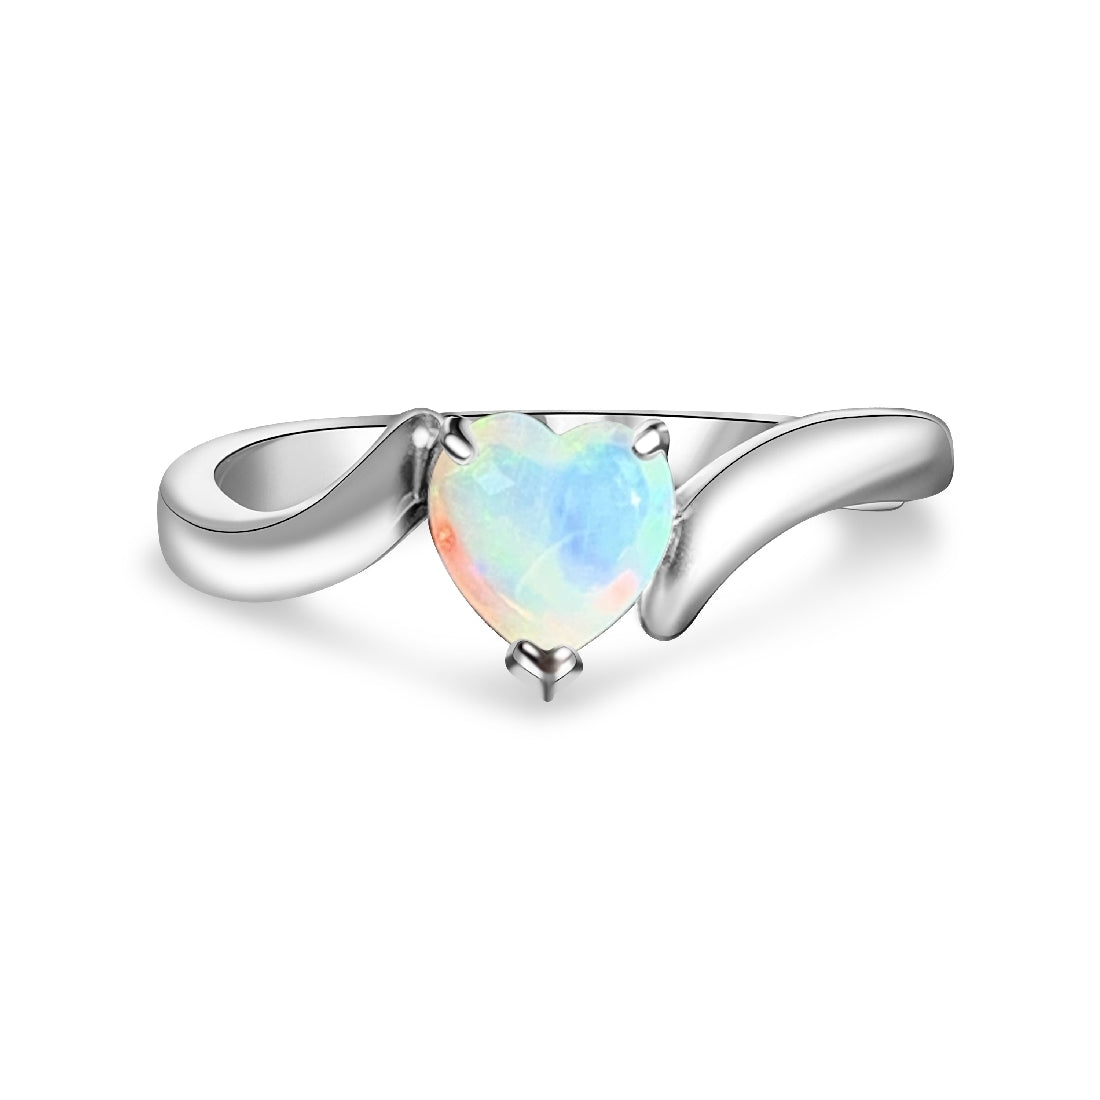 Sterling Silver 6mm Heart shape White Opal ring - Masterpiece Jewellery Opal & Gems Sydney Australia | Online Shop